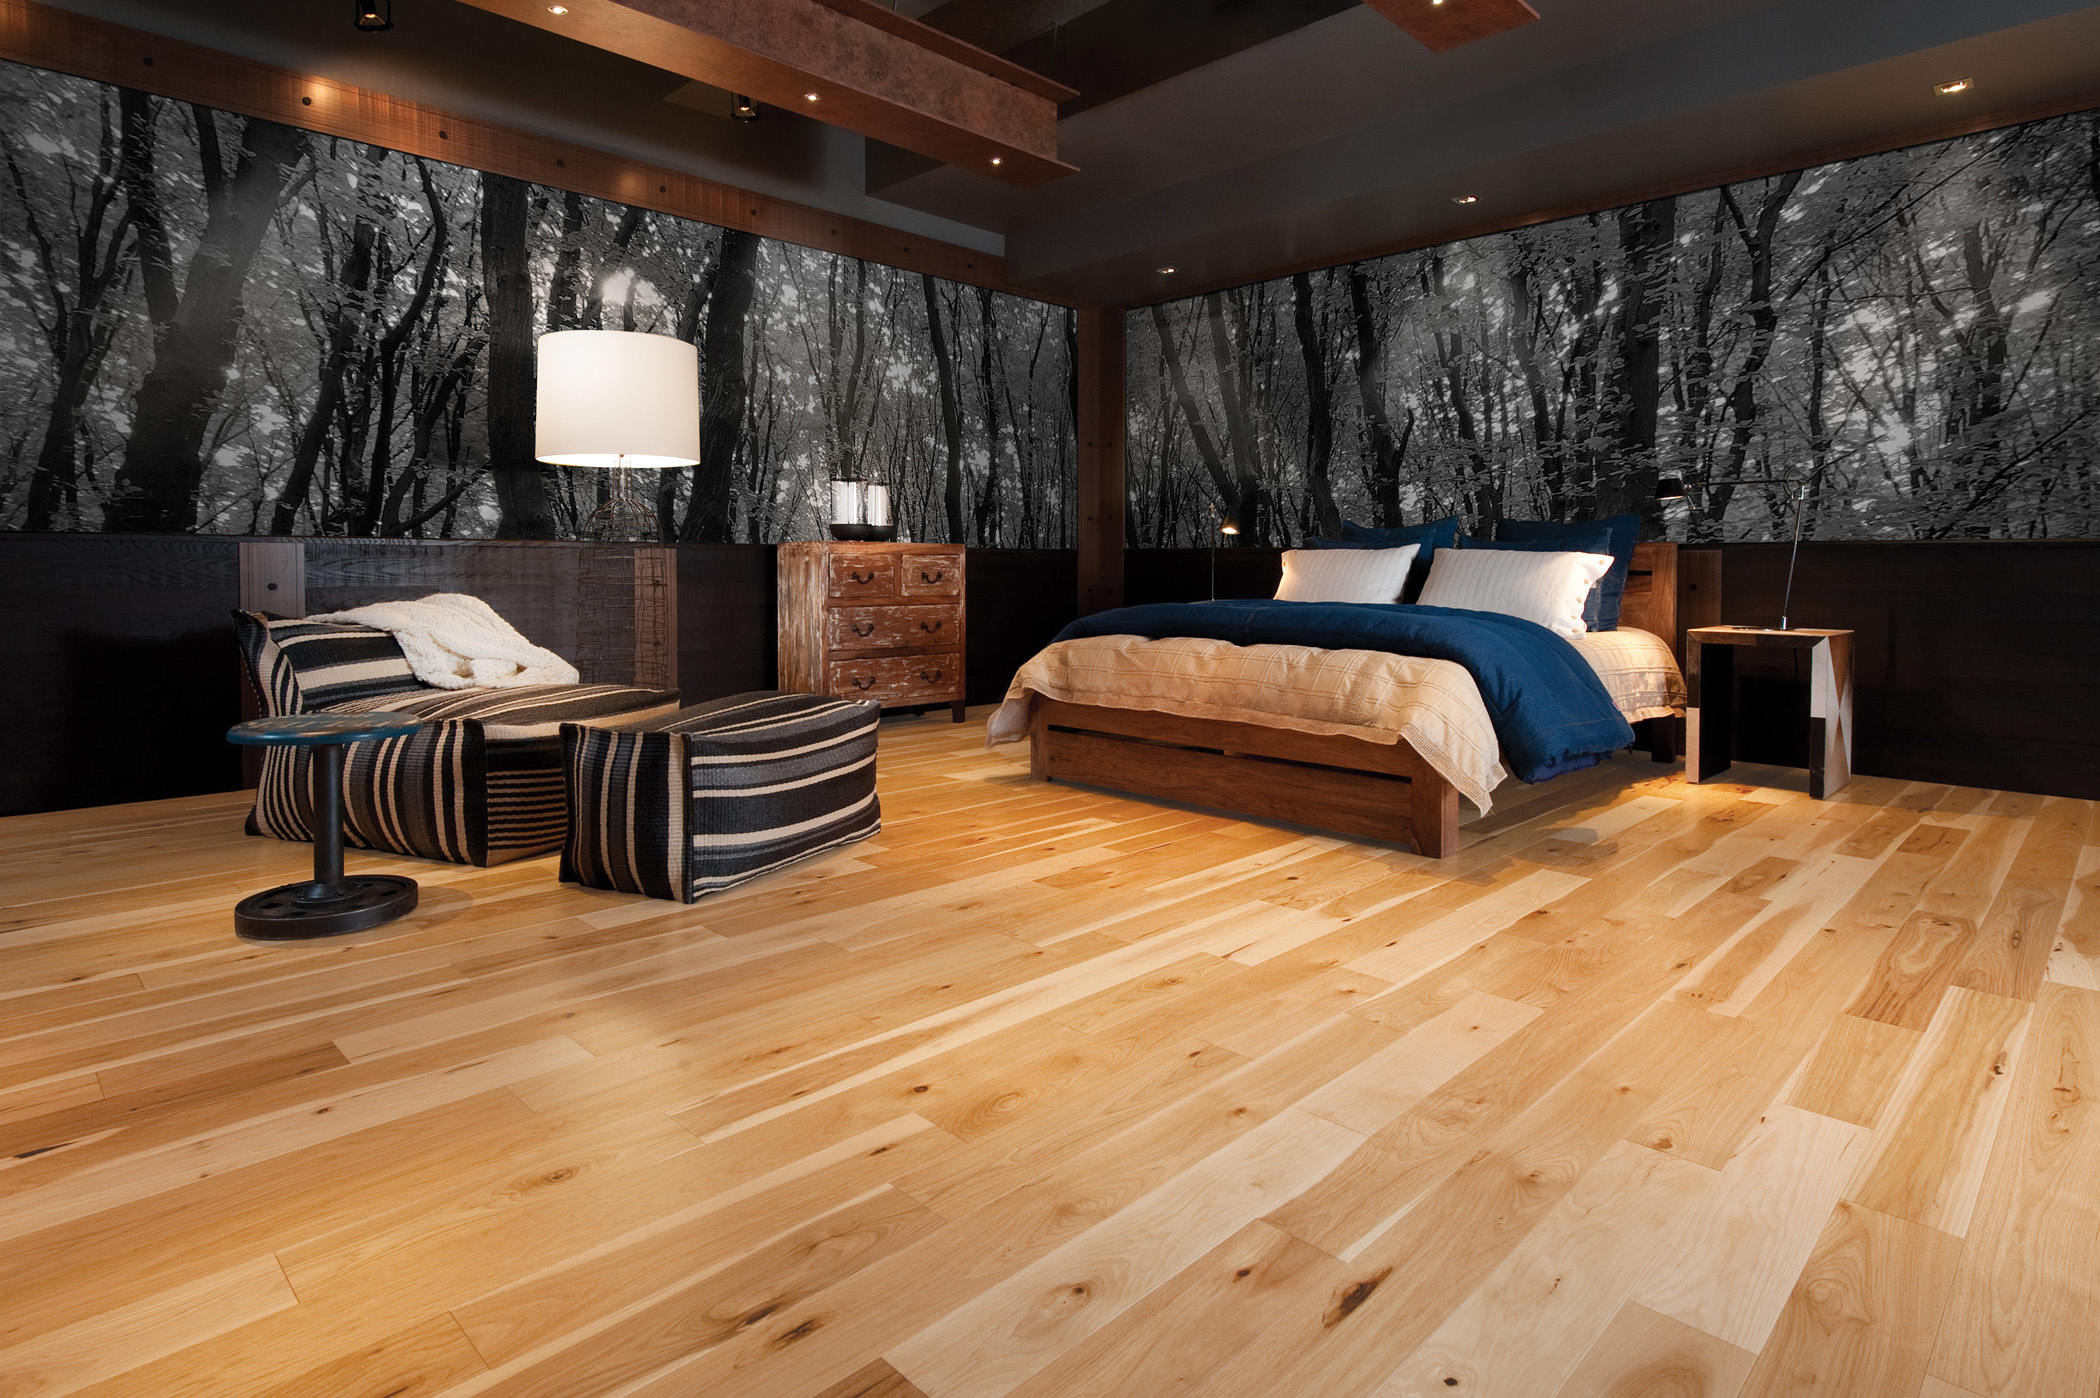 Hardwood Floor, Rustic wooden floors, Cozy bedroom design, Natural beauty, 2100x1400 HD Desktop